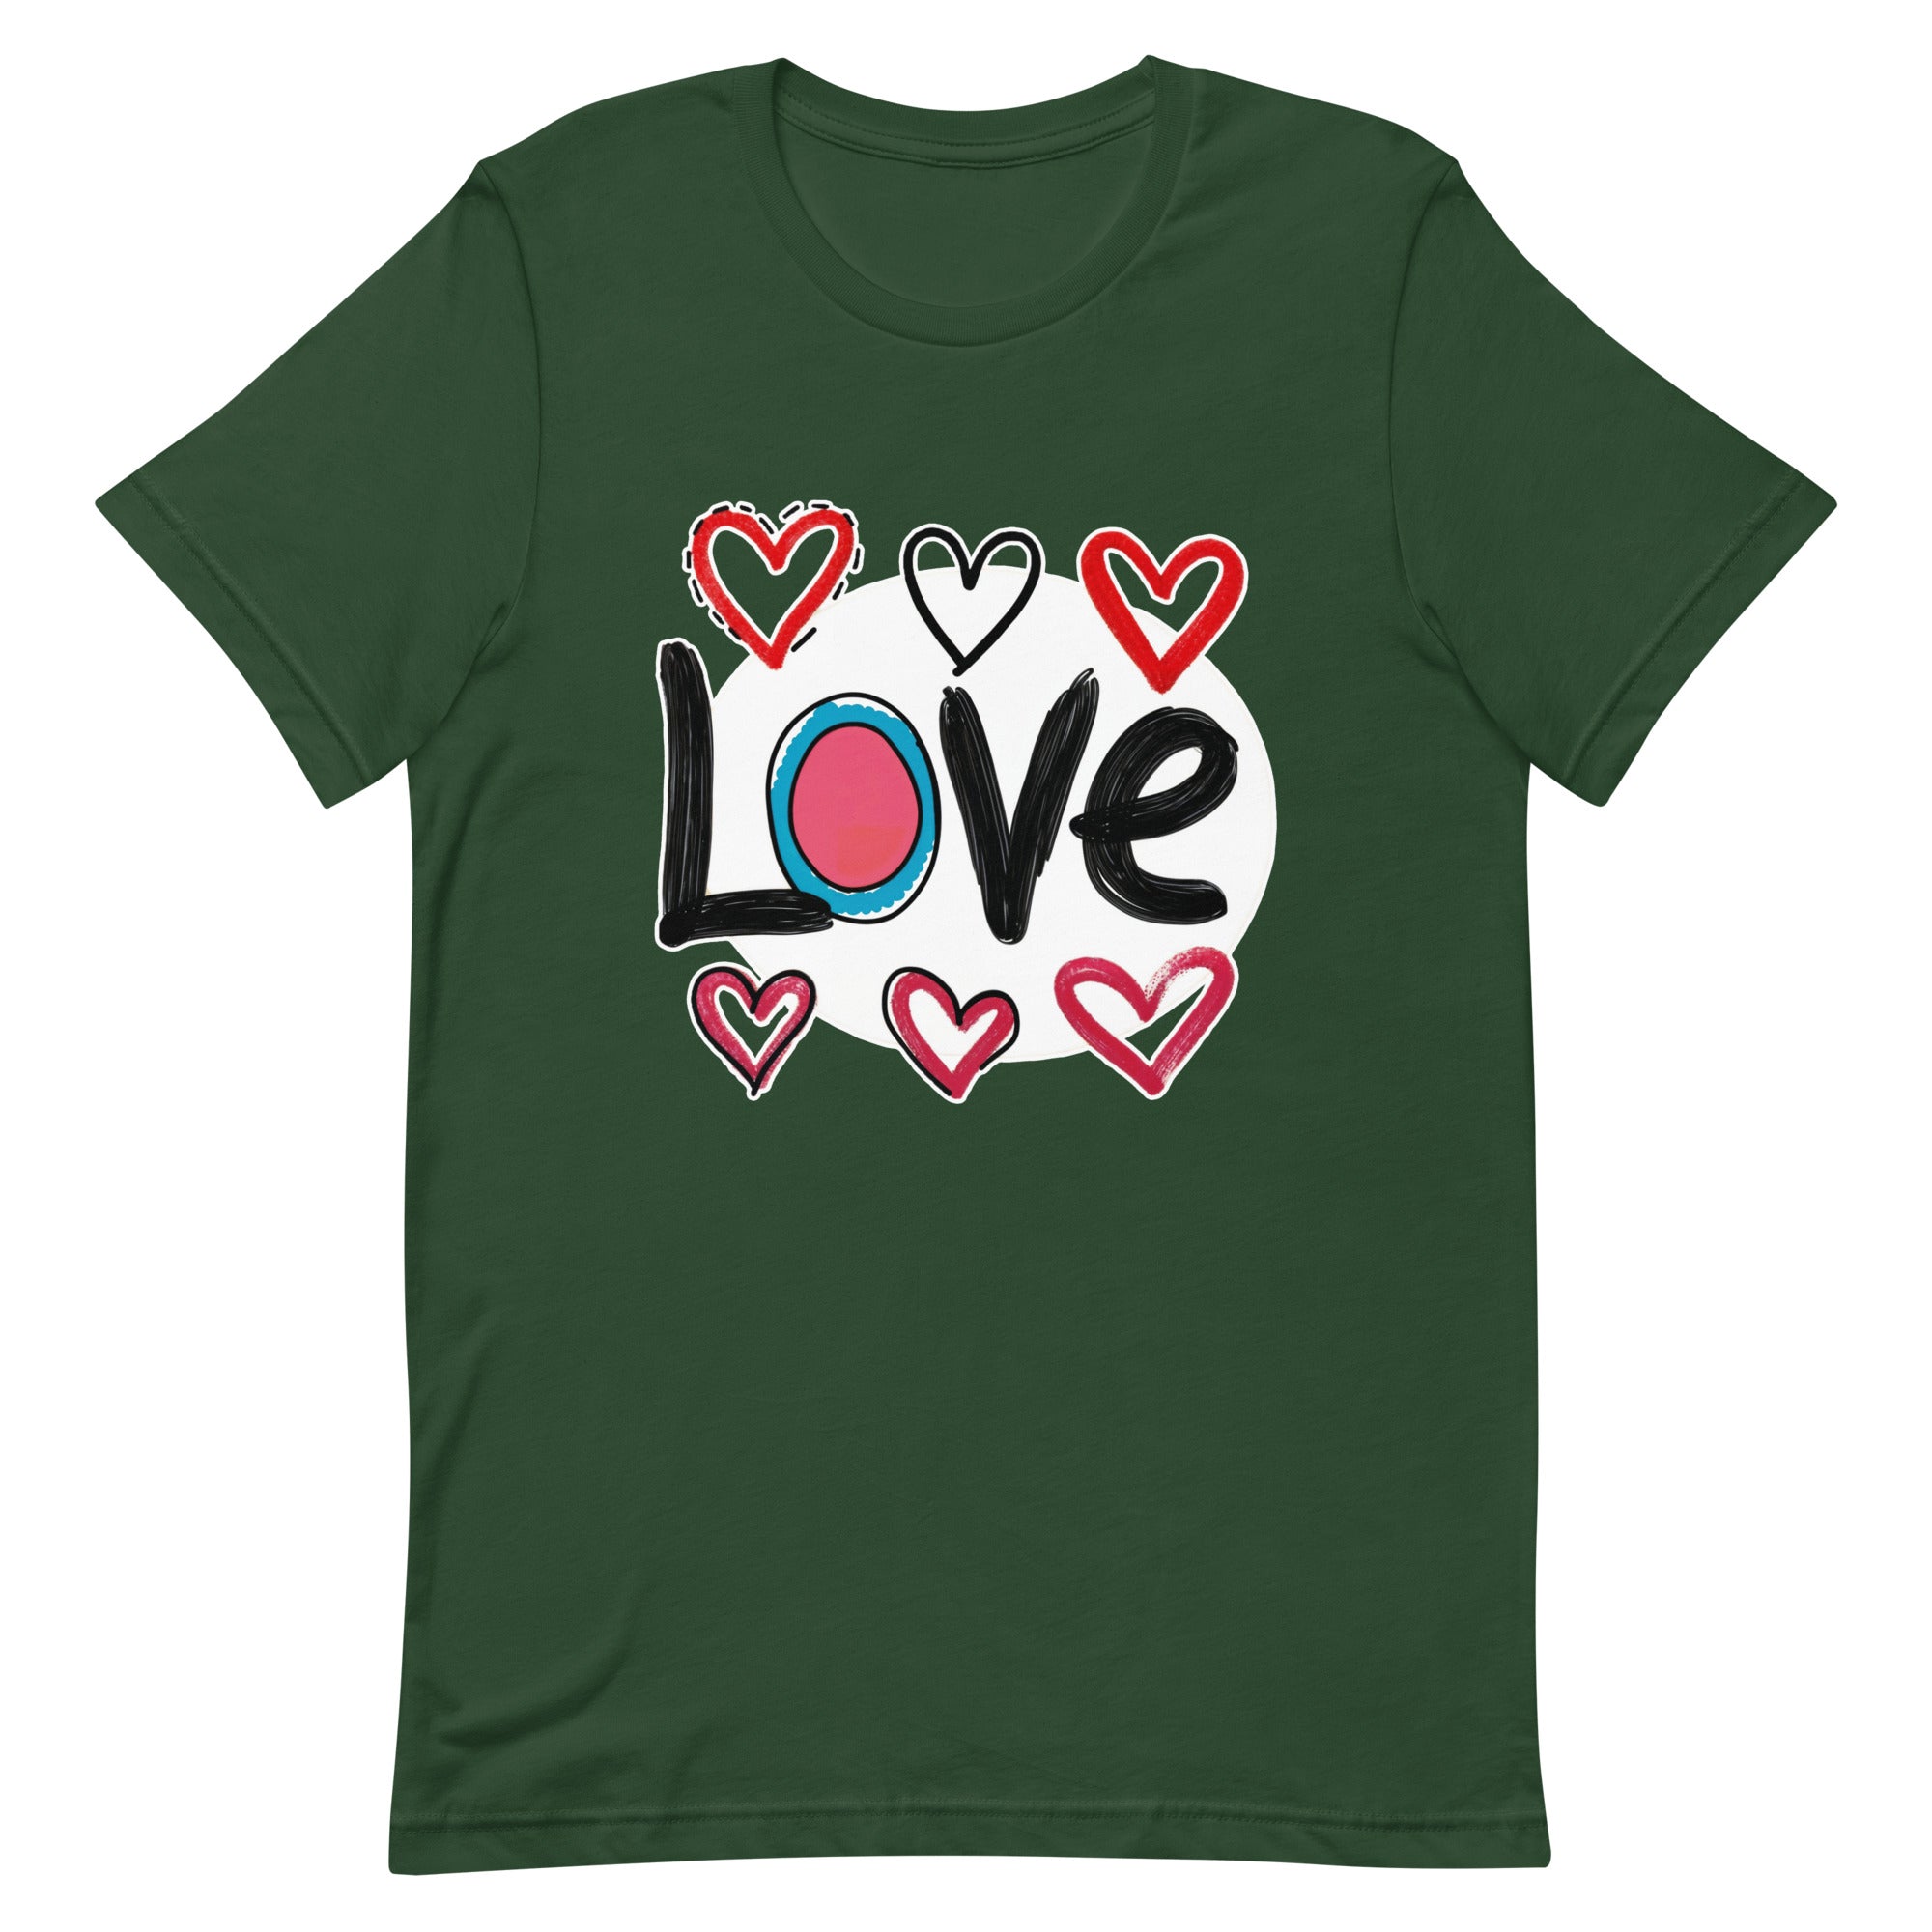 Pop-Art "Love." T-Shirt, Gift For Pop-Art Lovers Forest M XL S L DenBox